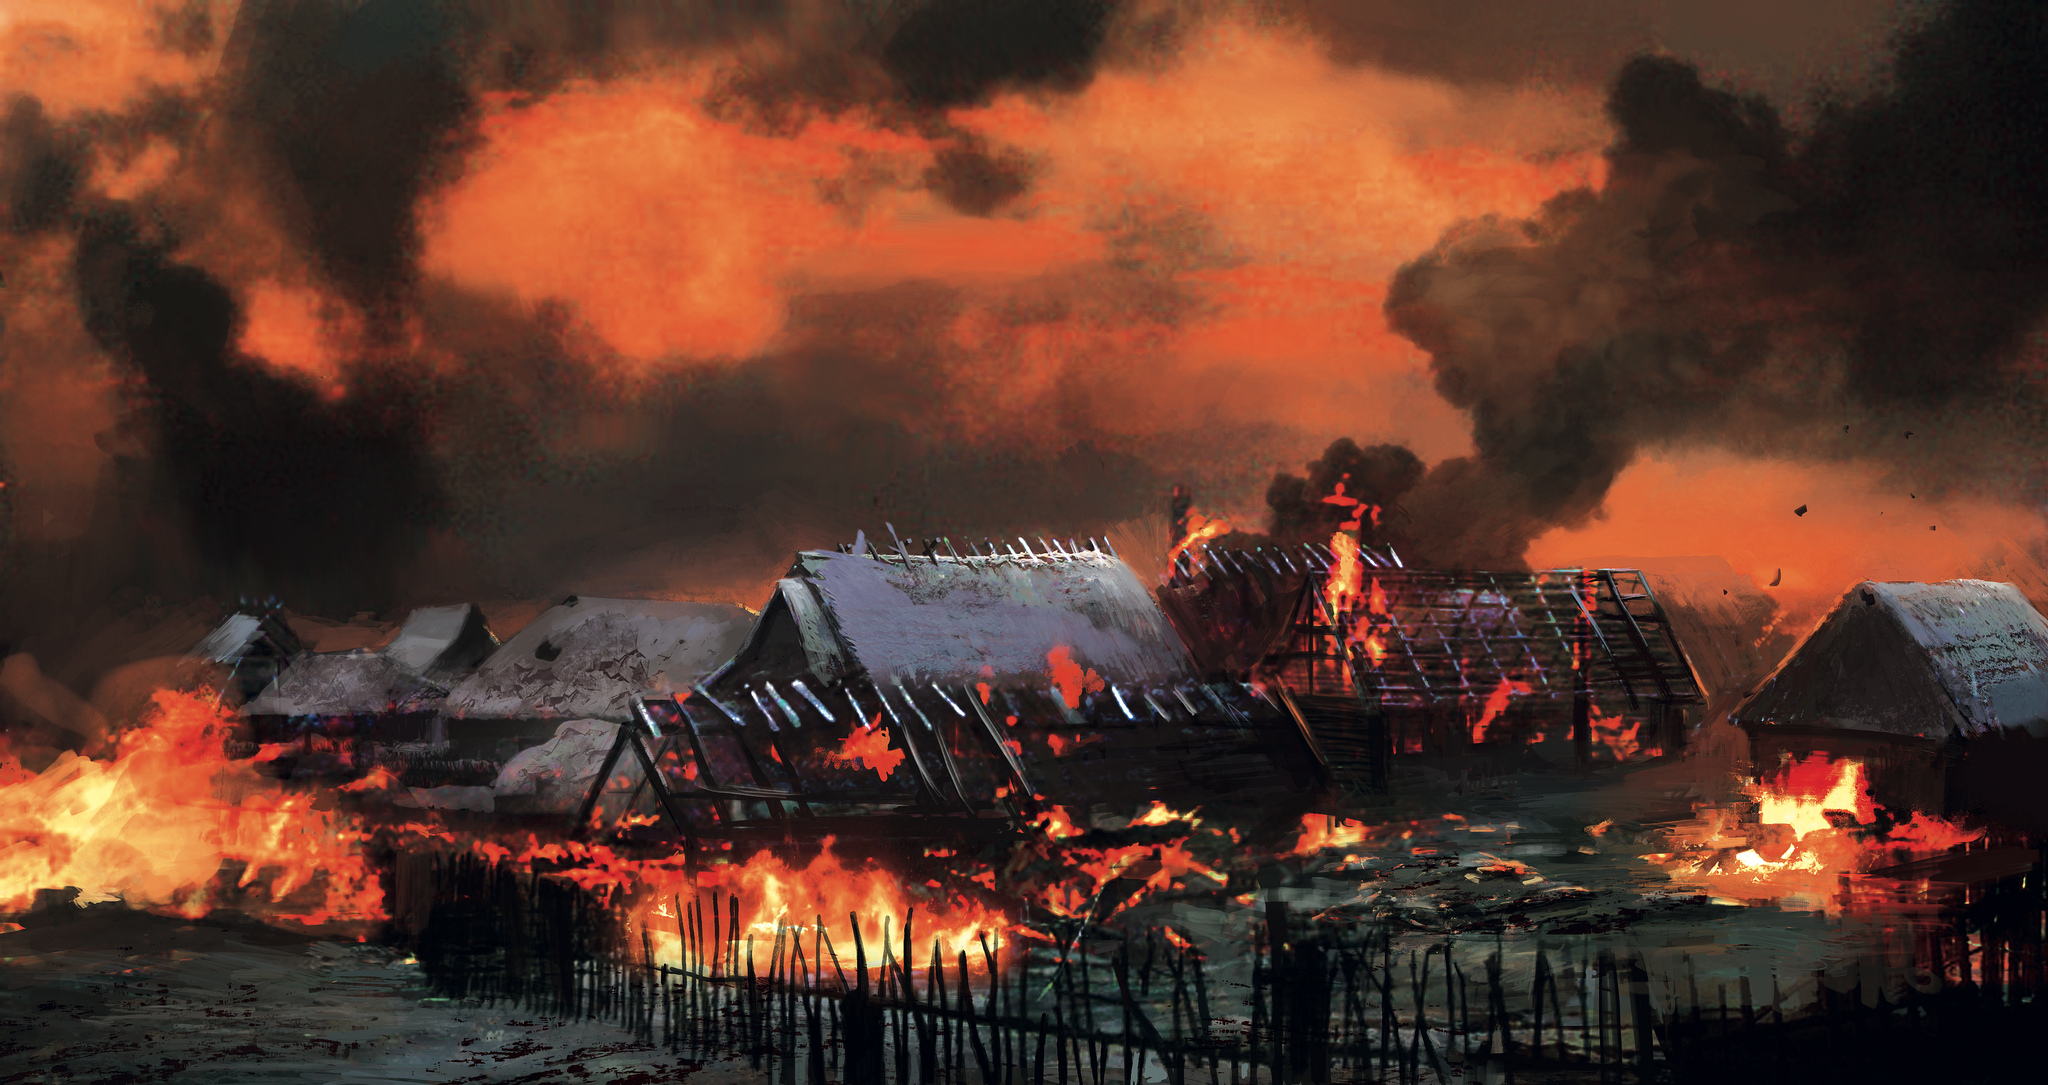 Burning village